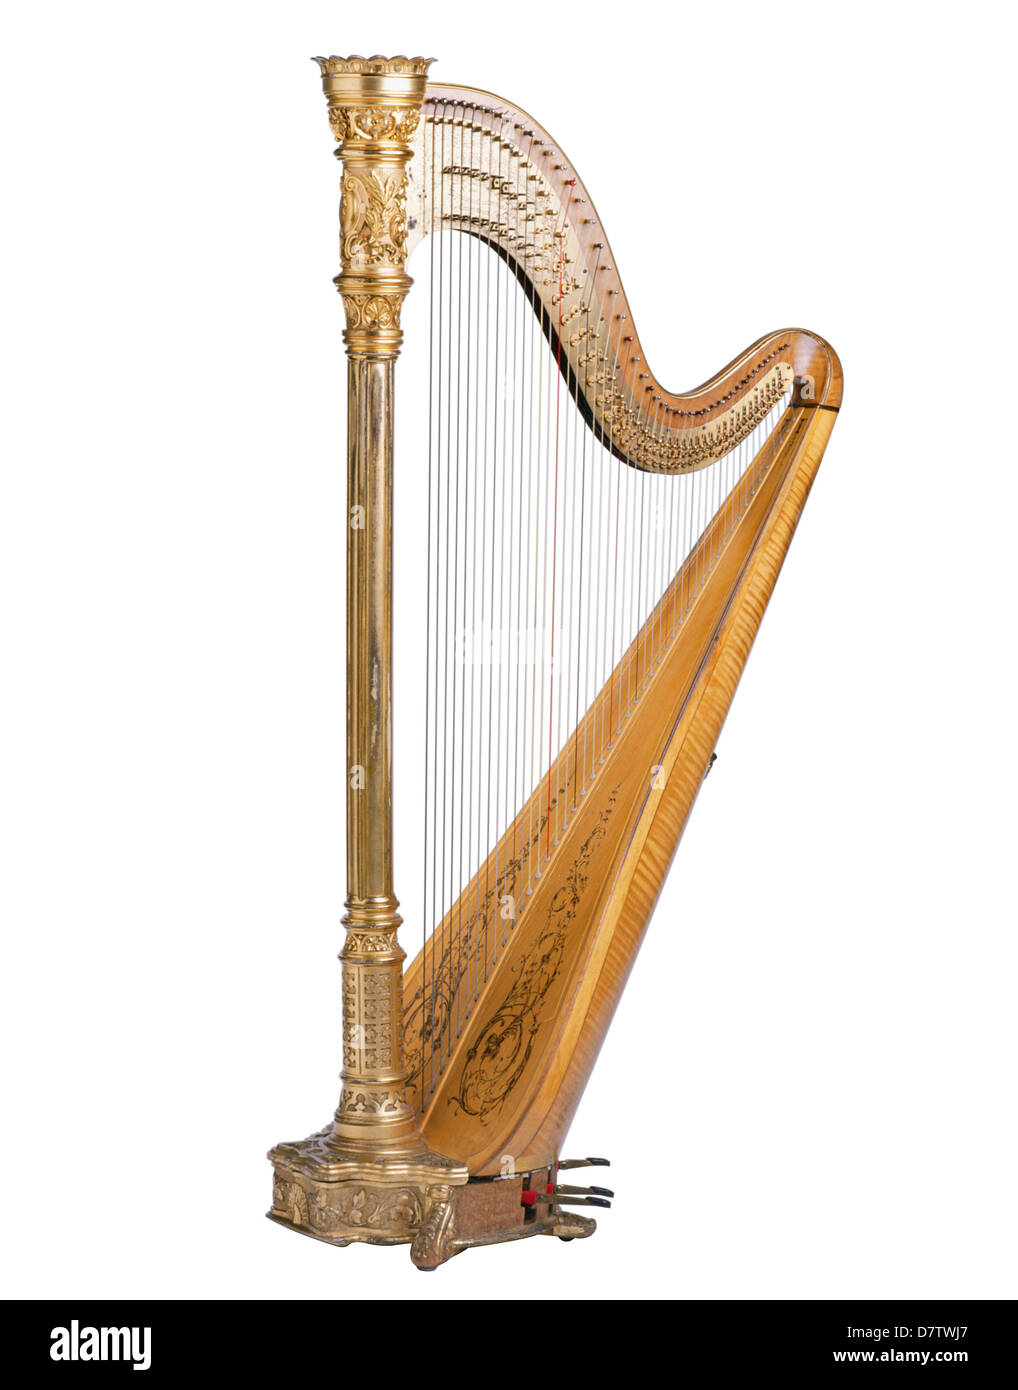 Harpe instrument de musique classique sur un fond blanc Photo Stock - Alamy